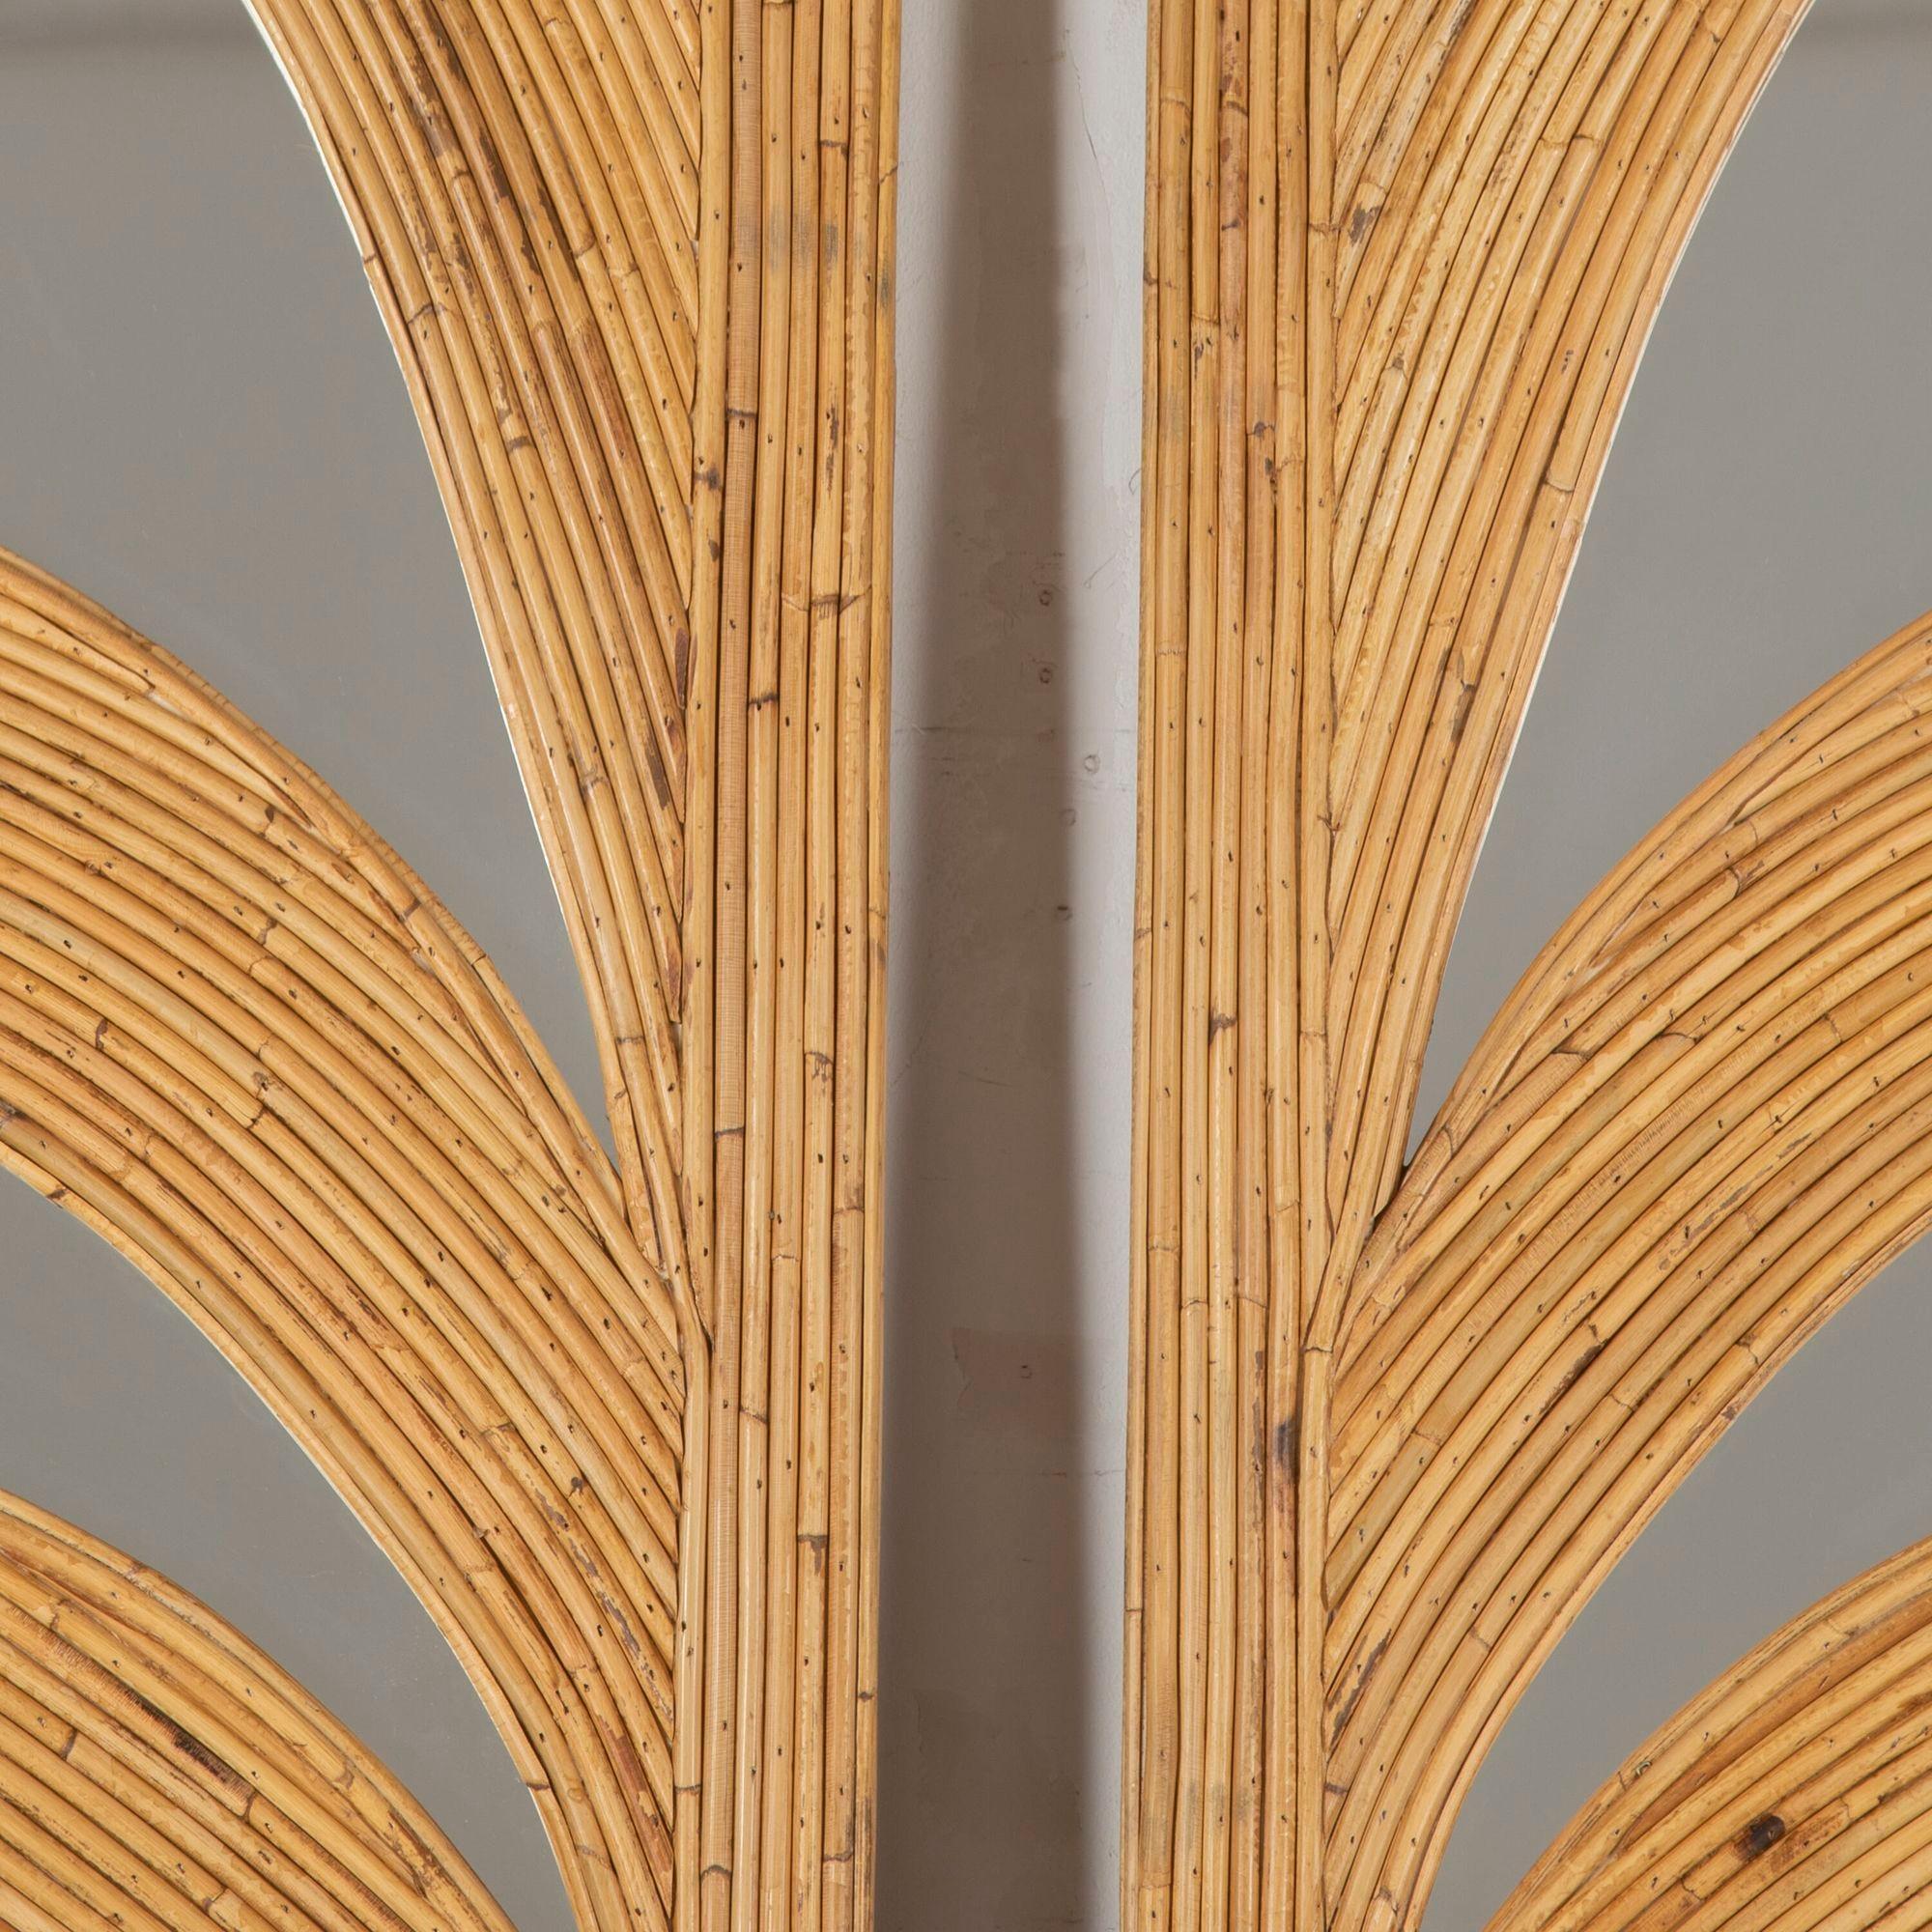 Paire de miroirs décoratifs en bambou du 20ème siècle dans le style de Vivai del Sud France.
Parfait pour un grand mur en tant que paire ou autonome en tant que miroirs simples. 